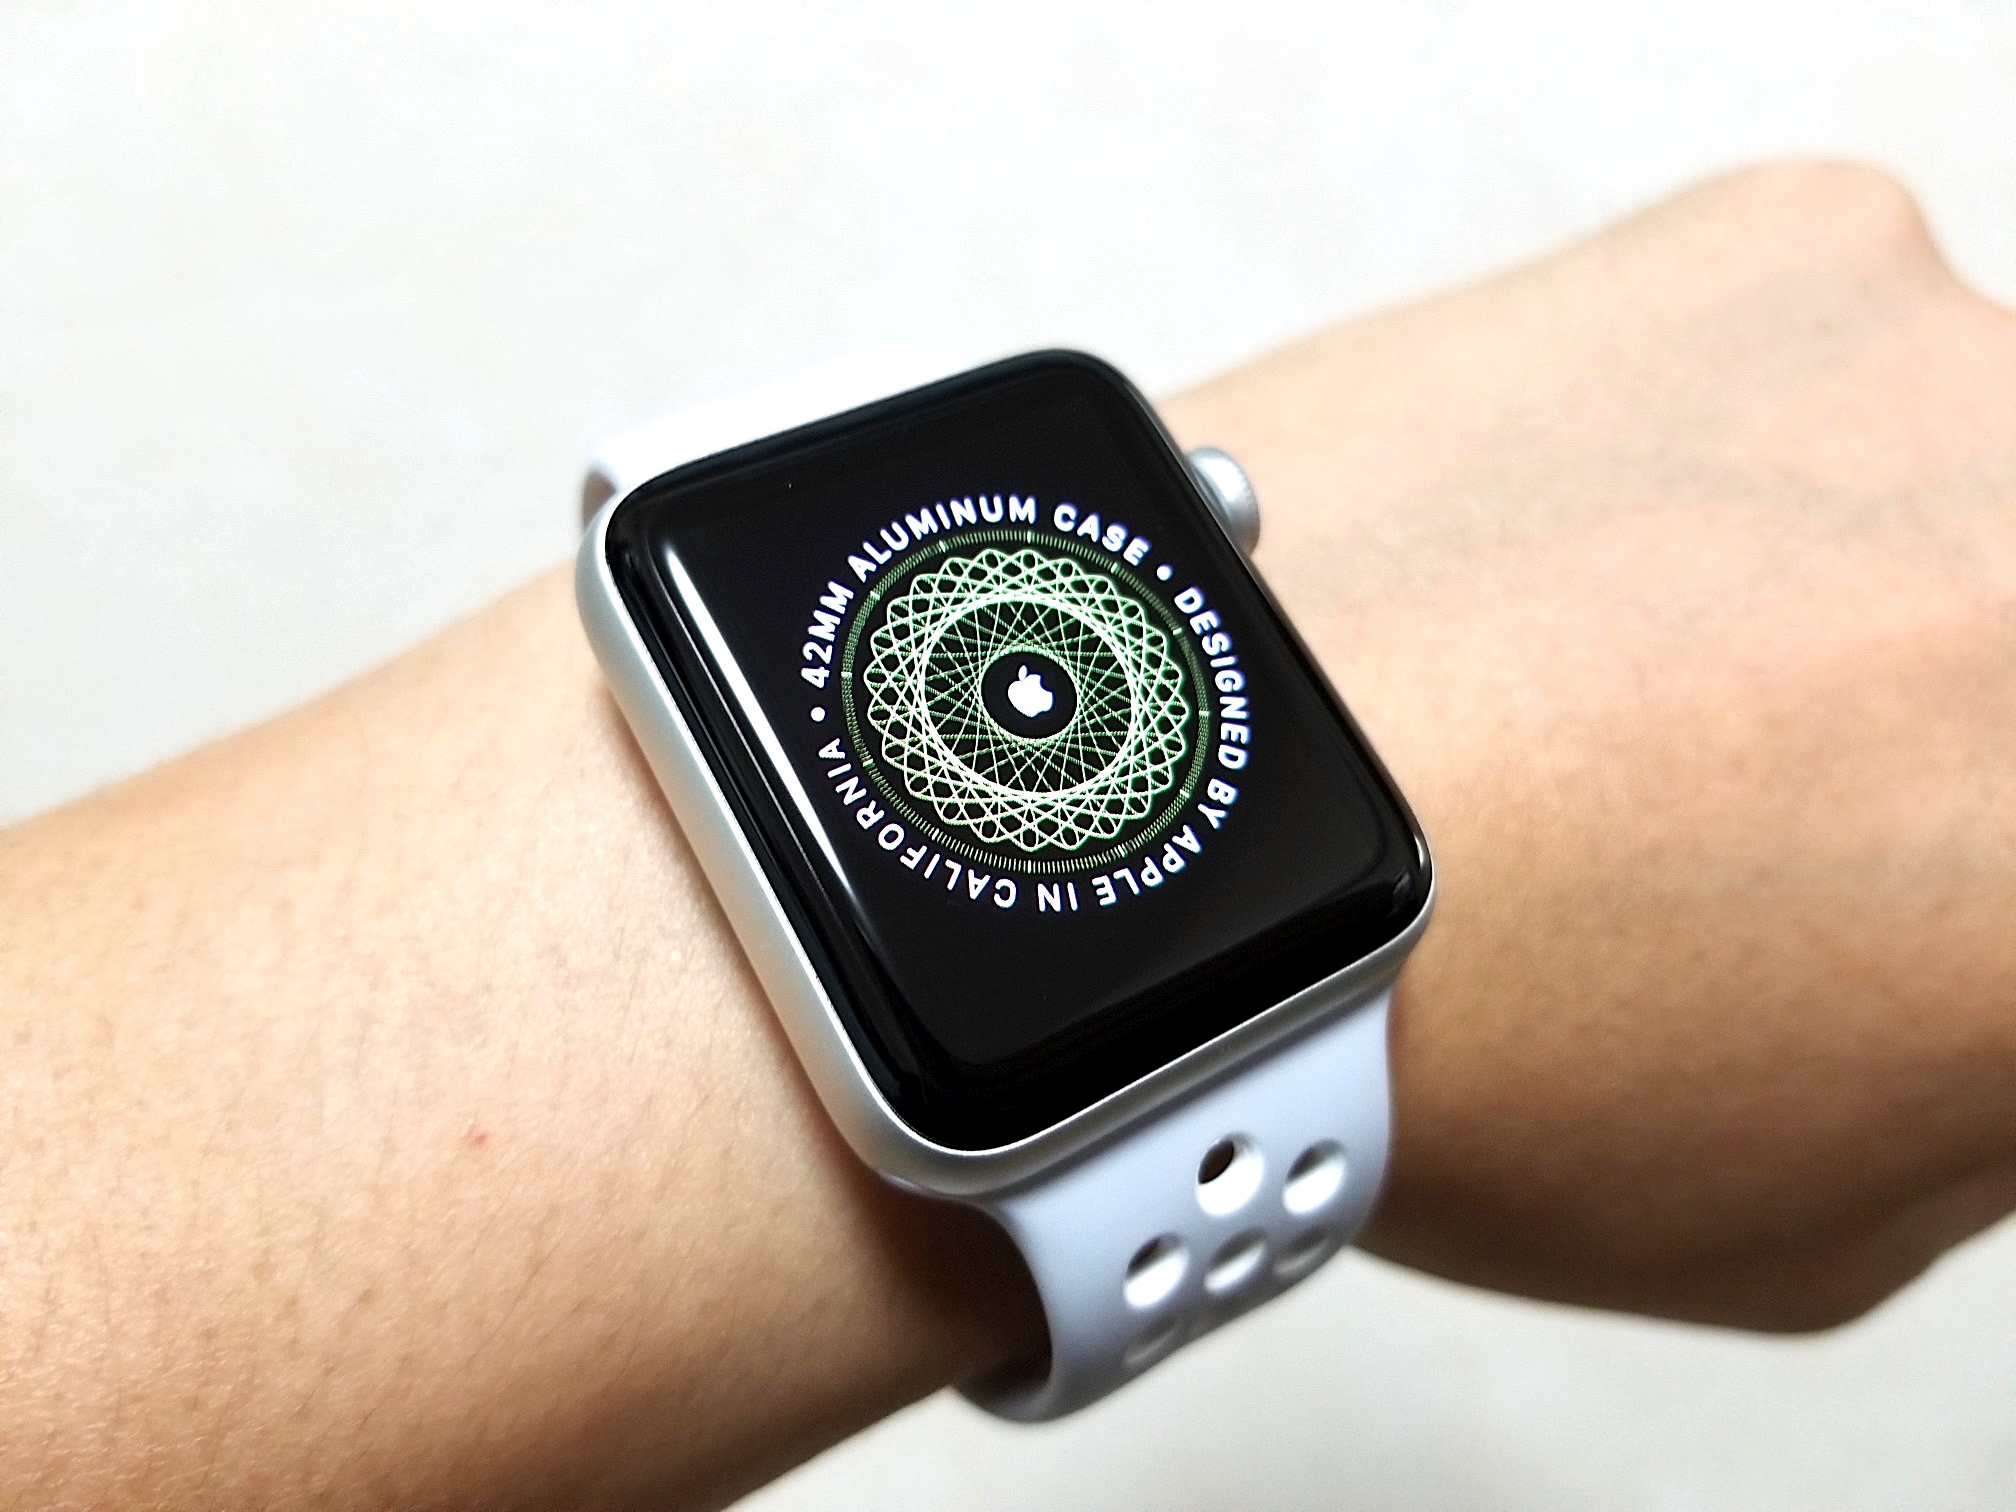 Apple Watch Series 2 Nike+ 42mmモデルを購入。こいつ、とにかく 